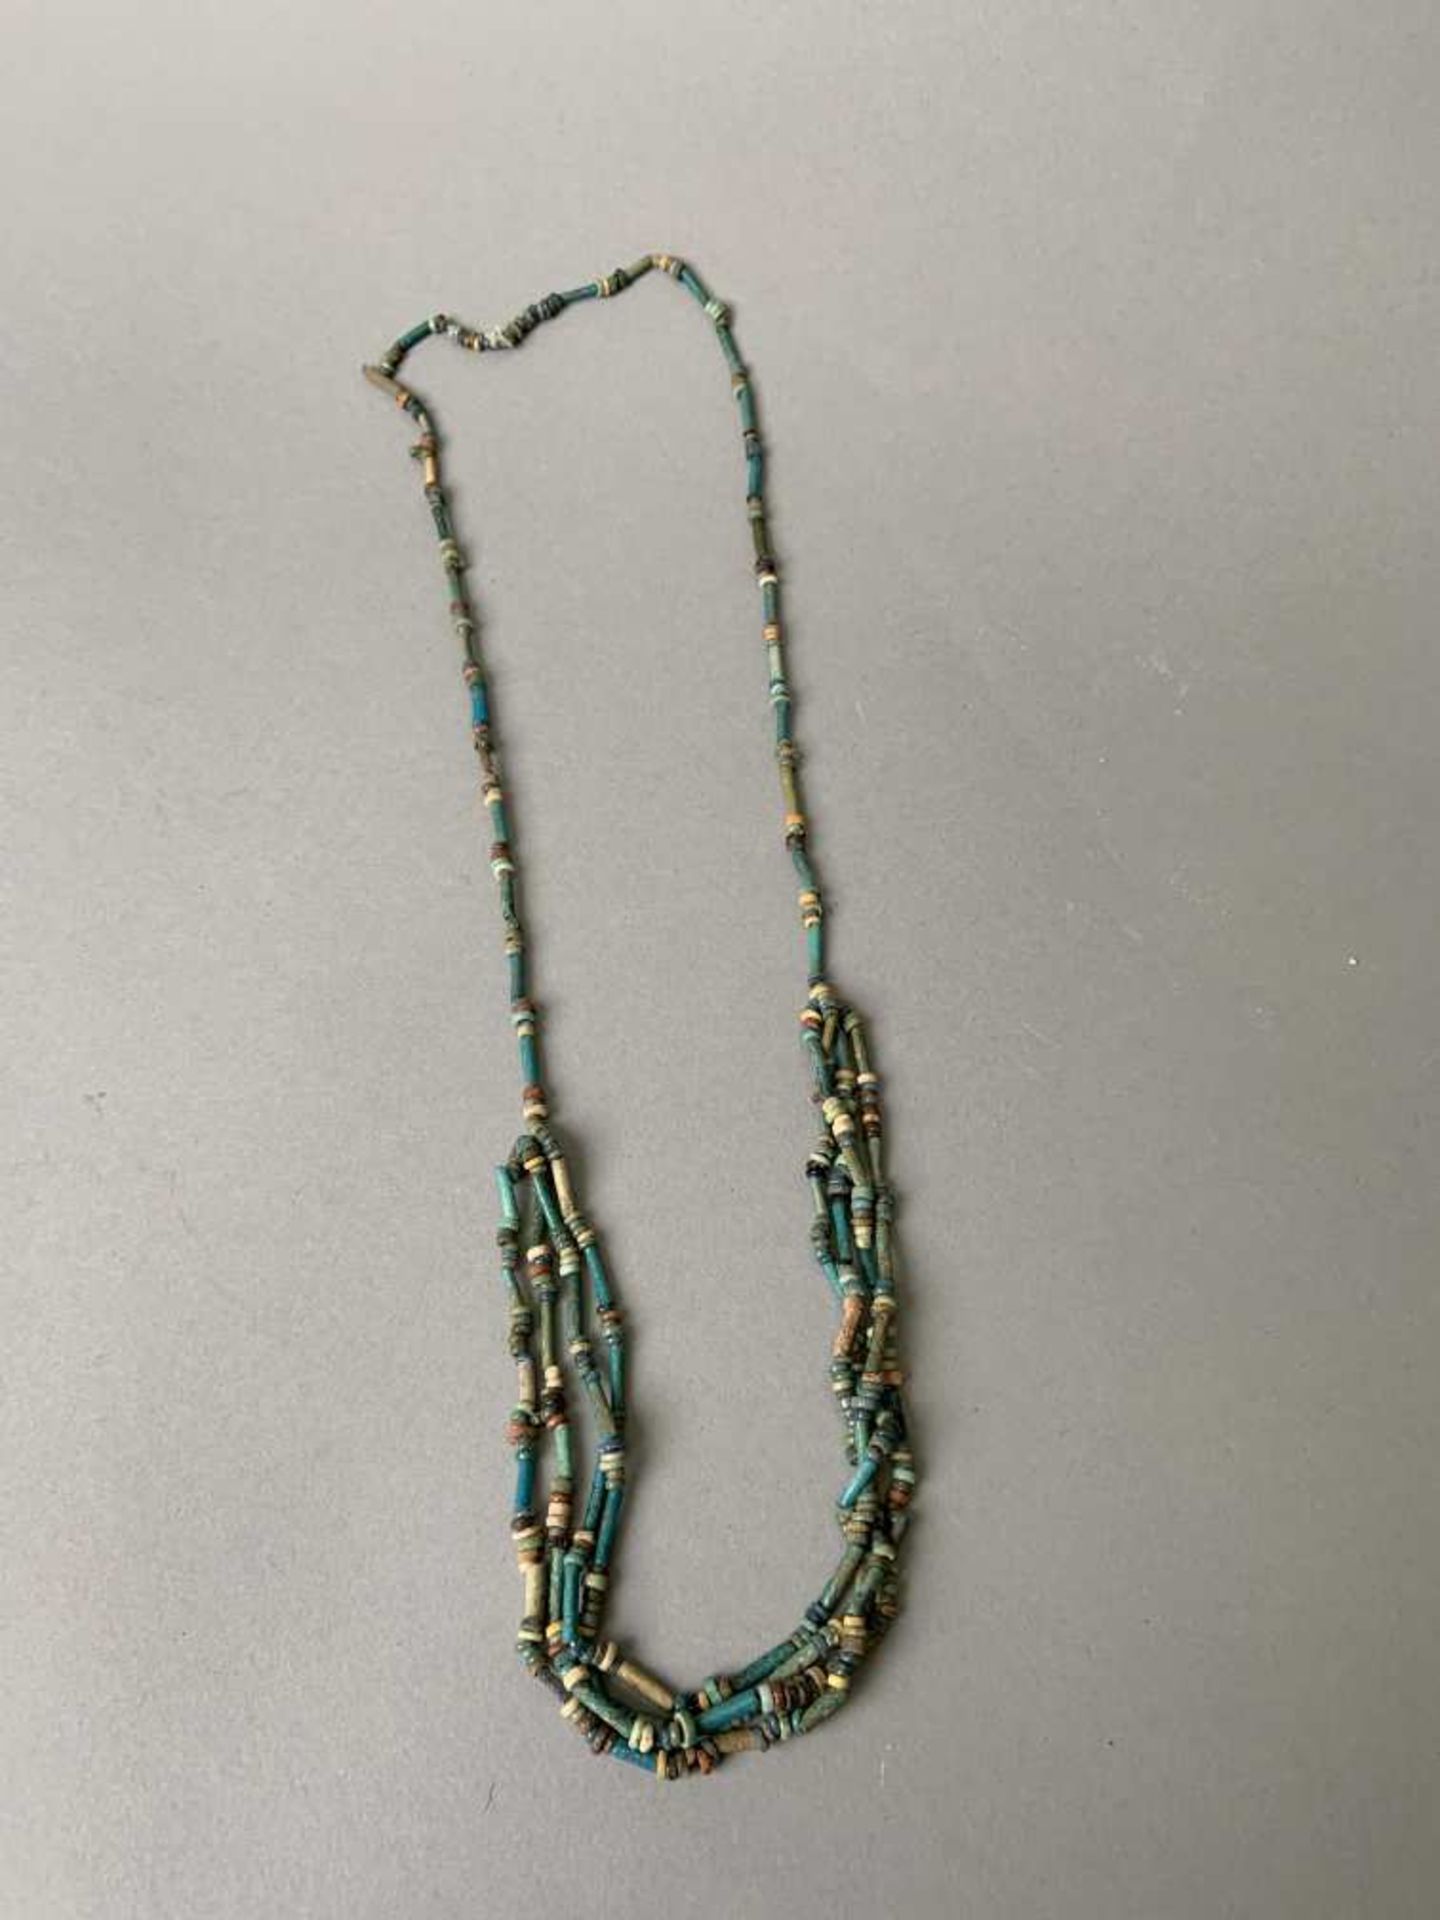 Collier composé de perles tubulaires en faïence émaillée, il est terminé par quatre rangs de perles.